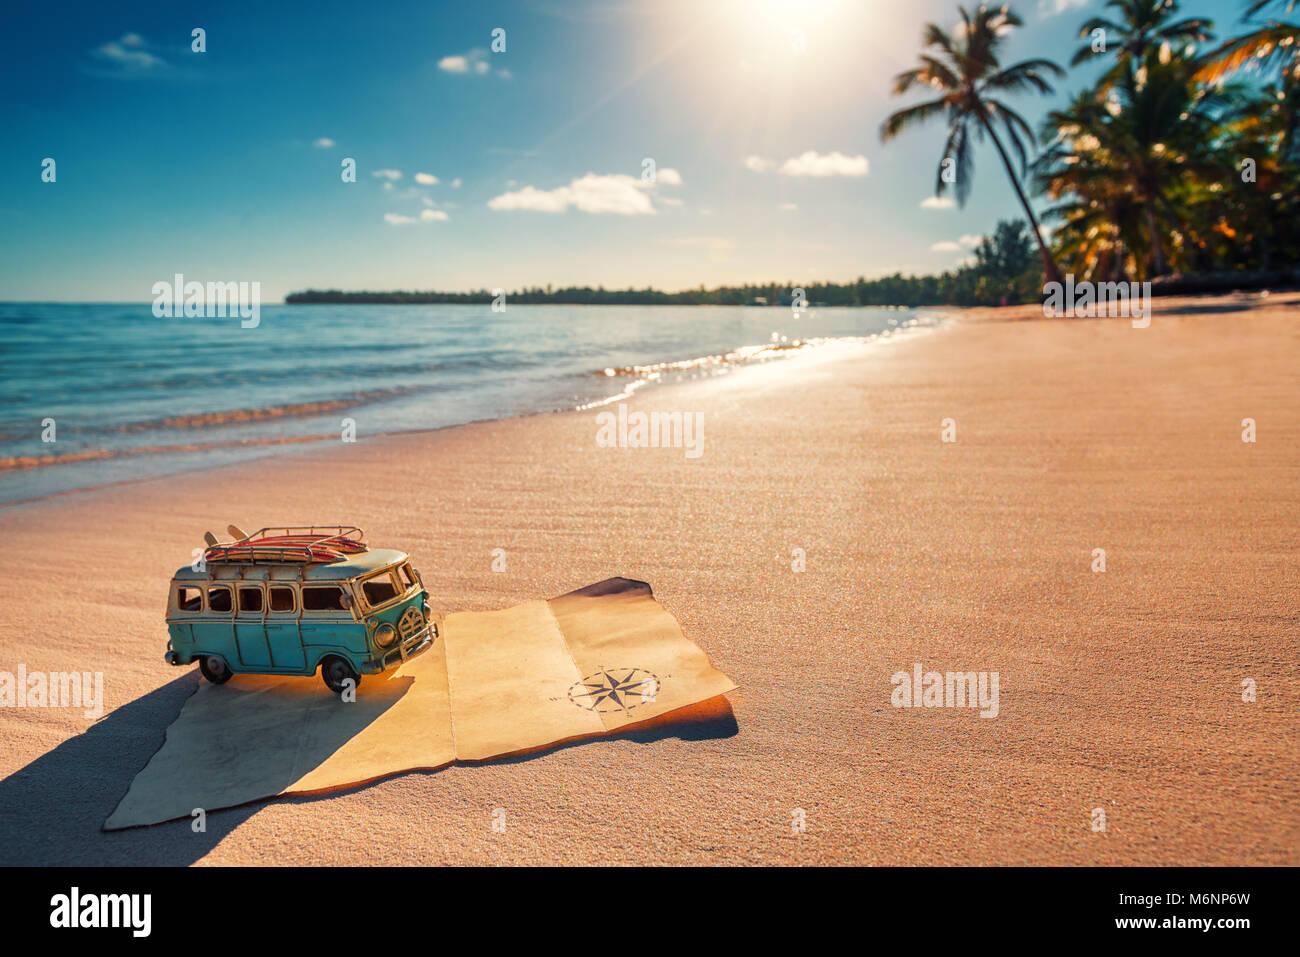 Vintage Voyage van miniature et vieille carte au trésor sur la plage tropicale à l'aube, travel concept.Travel cocept. Banque D'Images